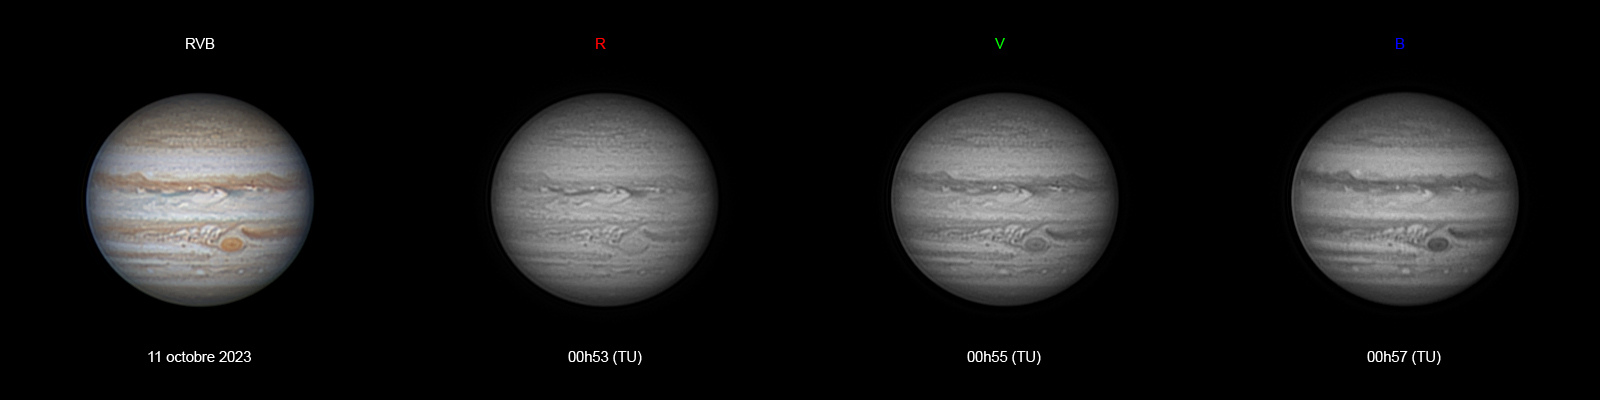 Jupiter-20231011-ba-RVB-Planche-AS.jpg.0f25aecc98c9f0108e290d0574b79fb8.jpg